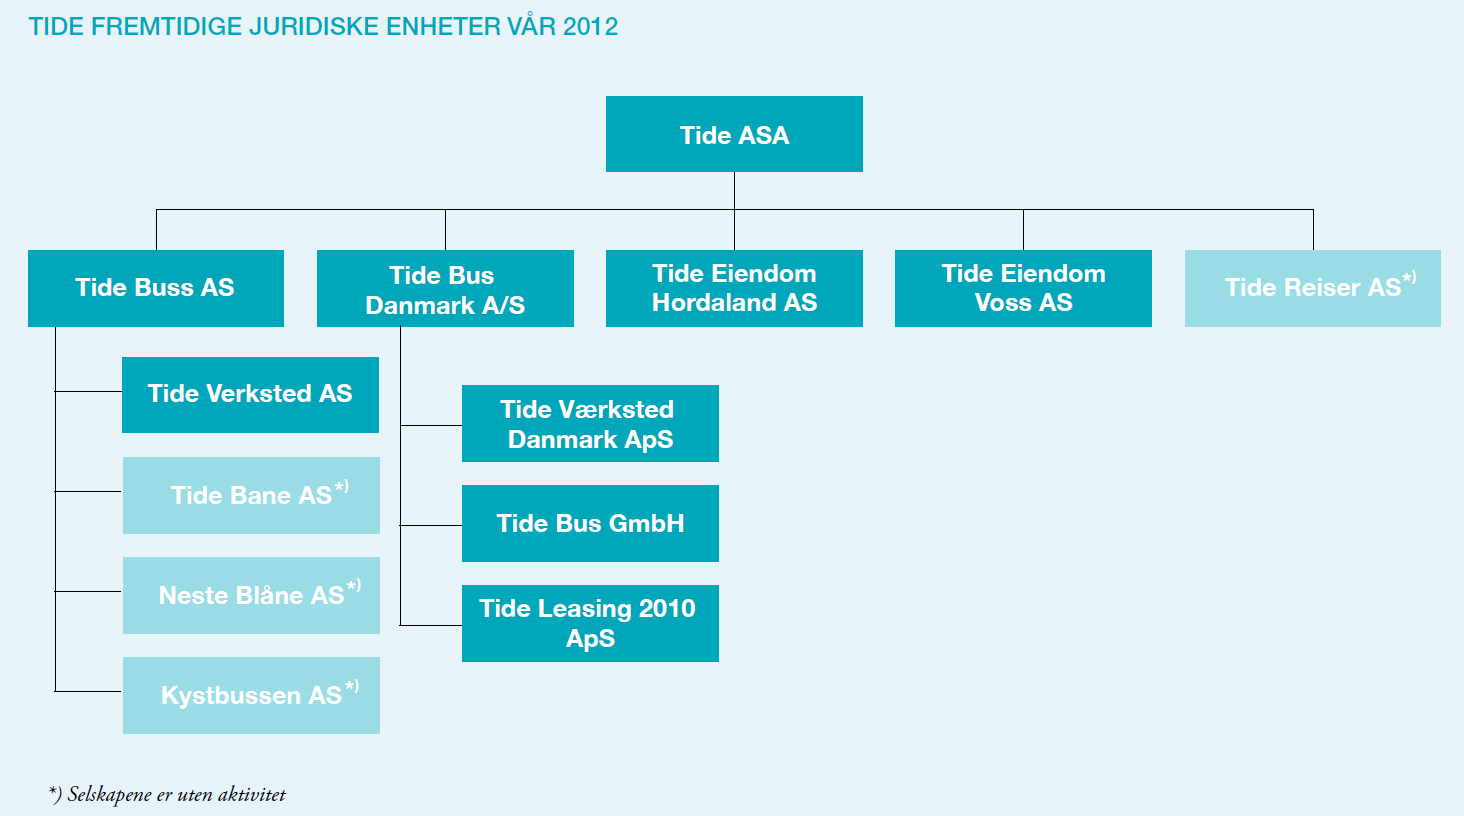 Tide konsernet 1. kvartal 2012 Tide ASA er notert på Oslo Børs. Selskapet er et av landets største selskap for kollektivtransport med en omsetning i 2011 på 2 milliarder kroner.